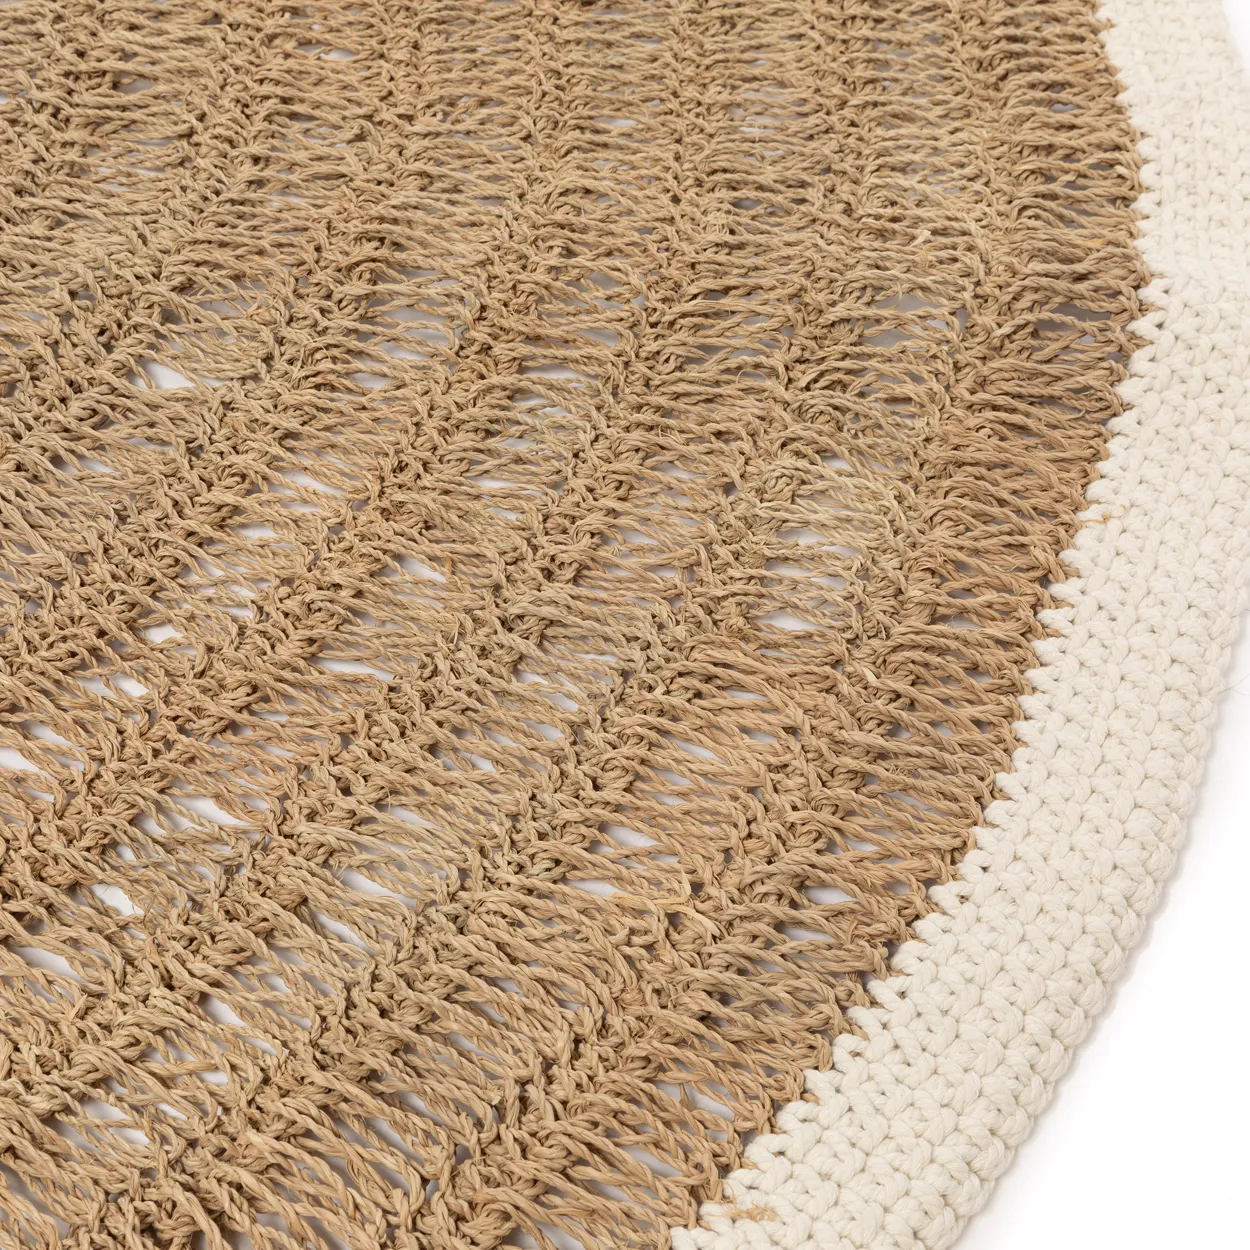 Runder Teppich aus Seegras und Baumwolle – Natur / Weiß – 150